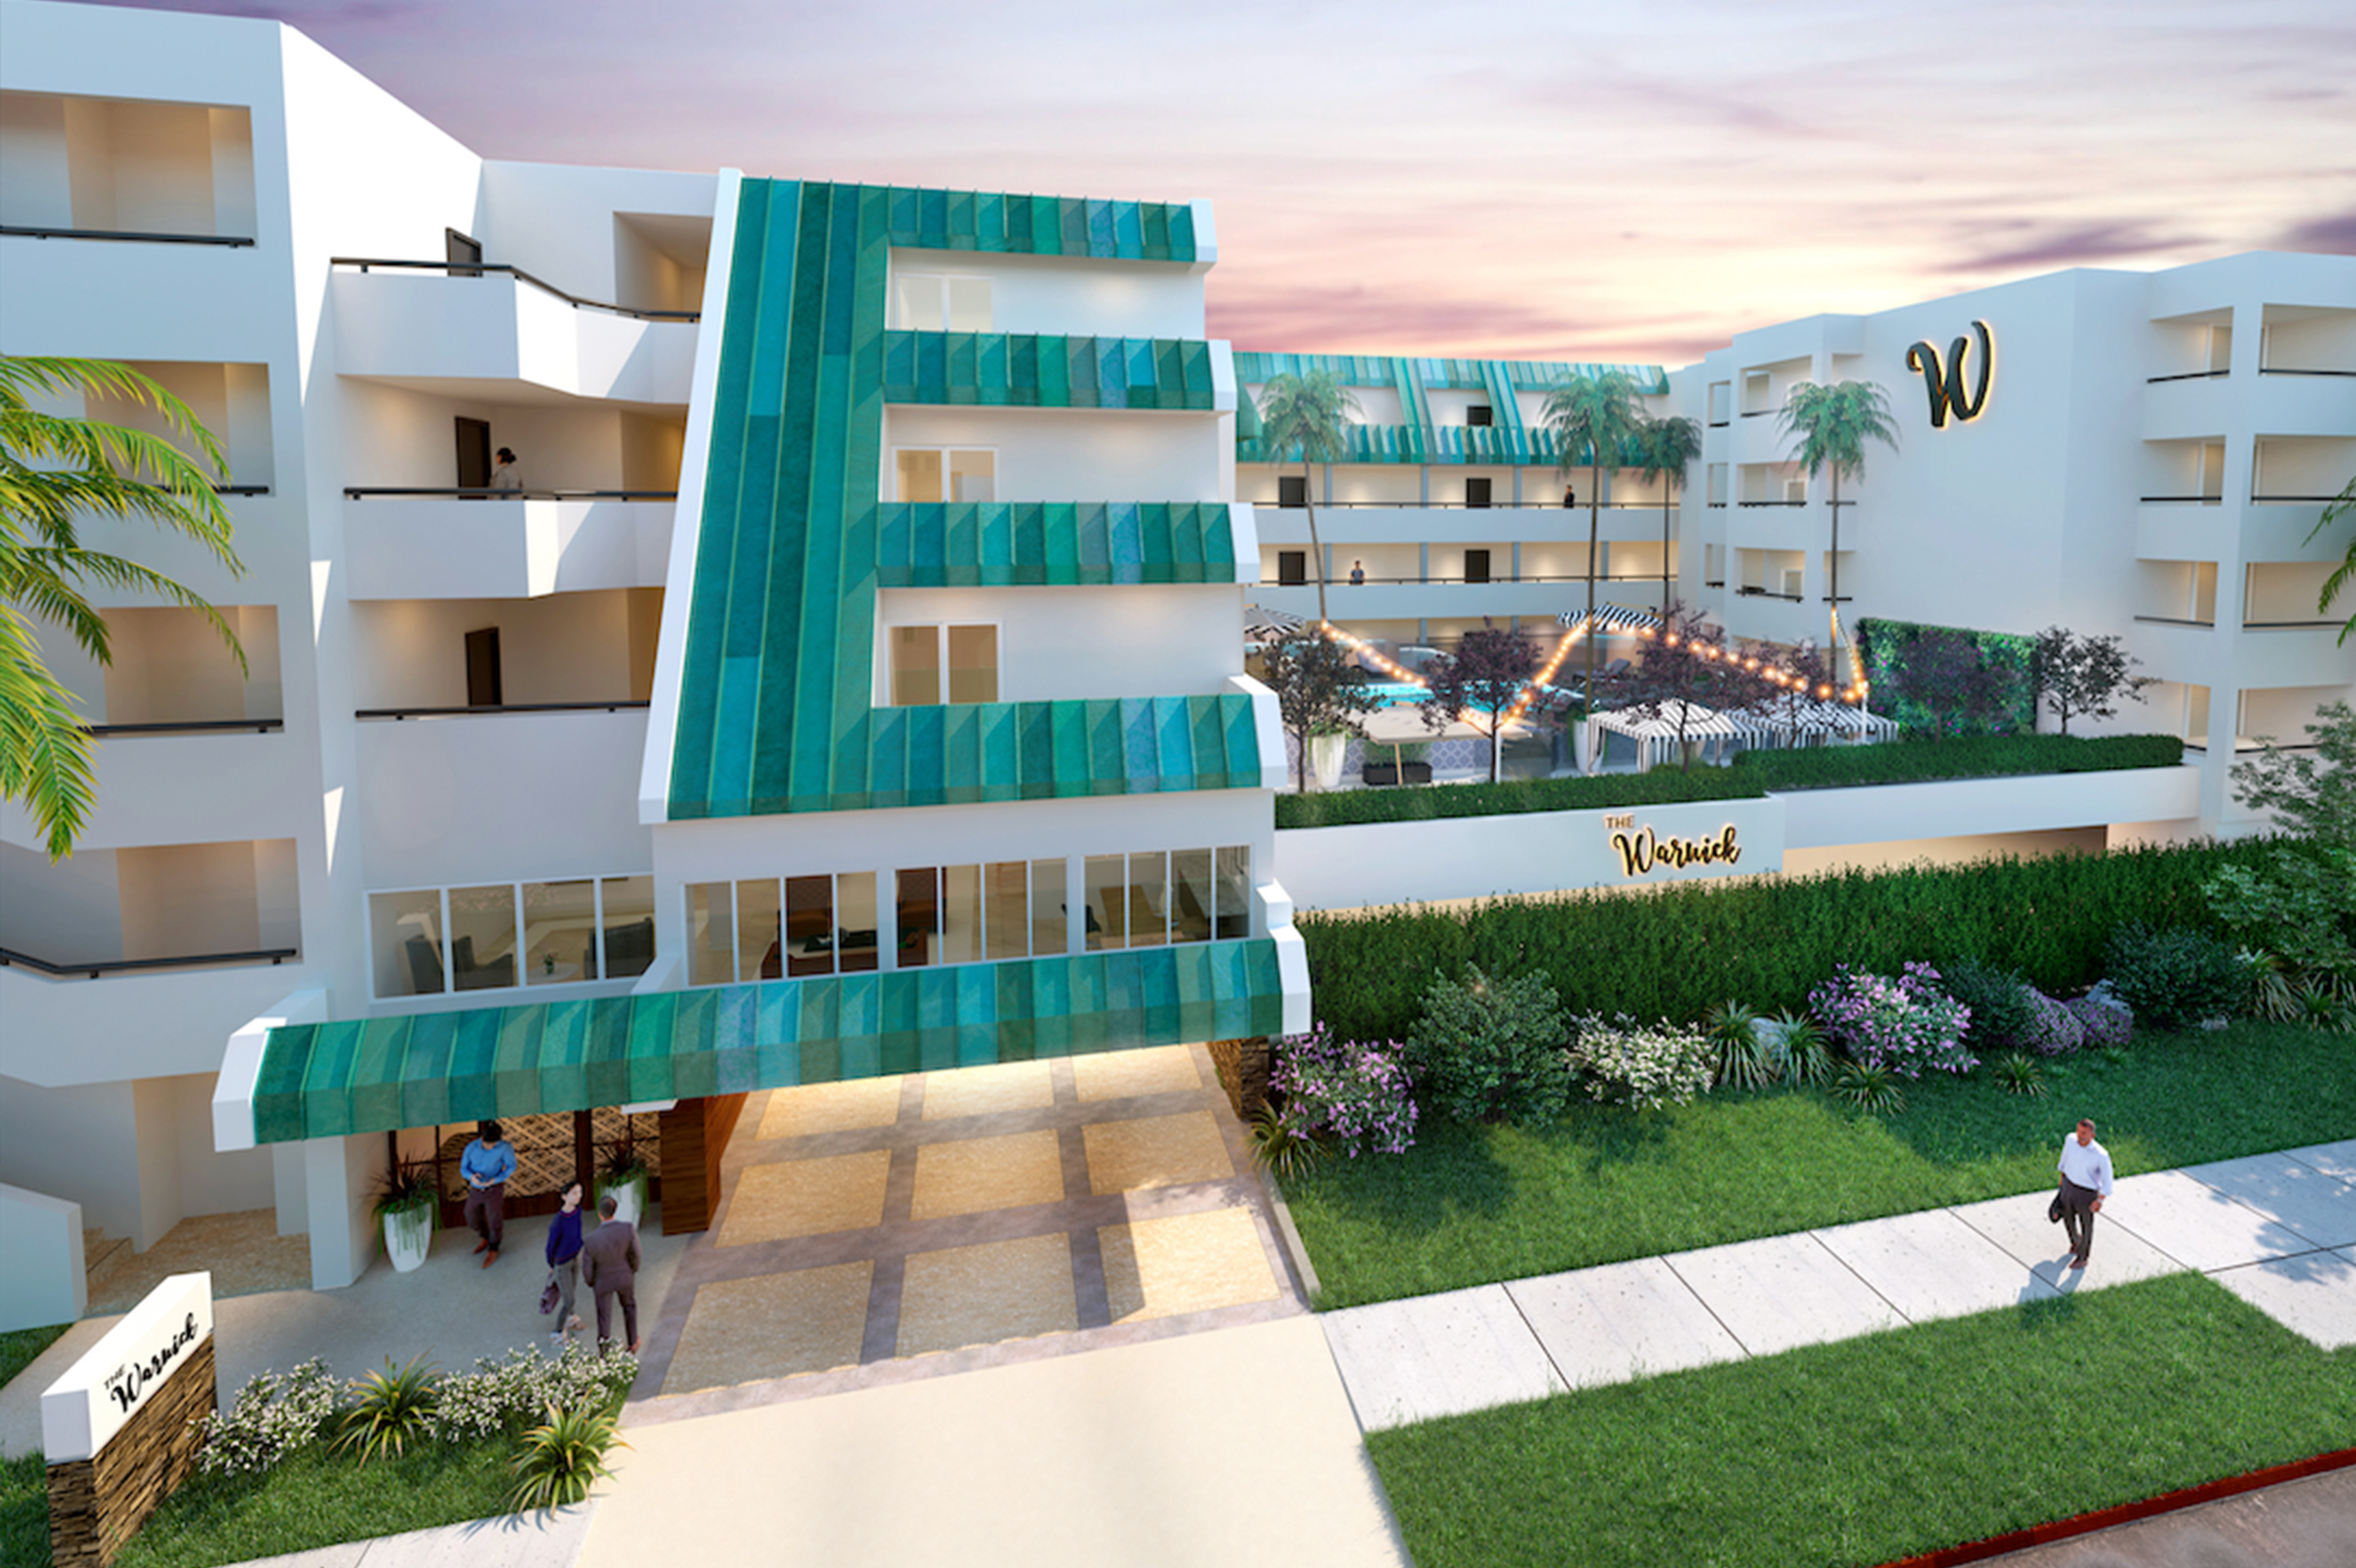 SENTRE Acquires Hillcrest Hotel for Apartment Conversion, Expanding Urban Portfolio